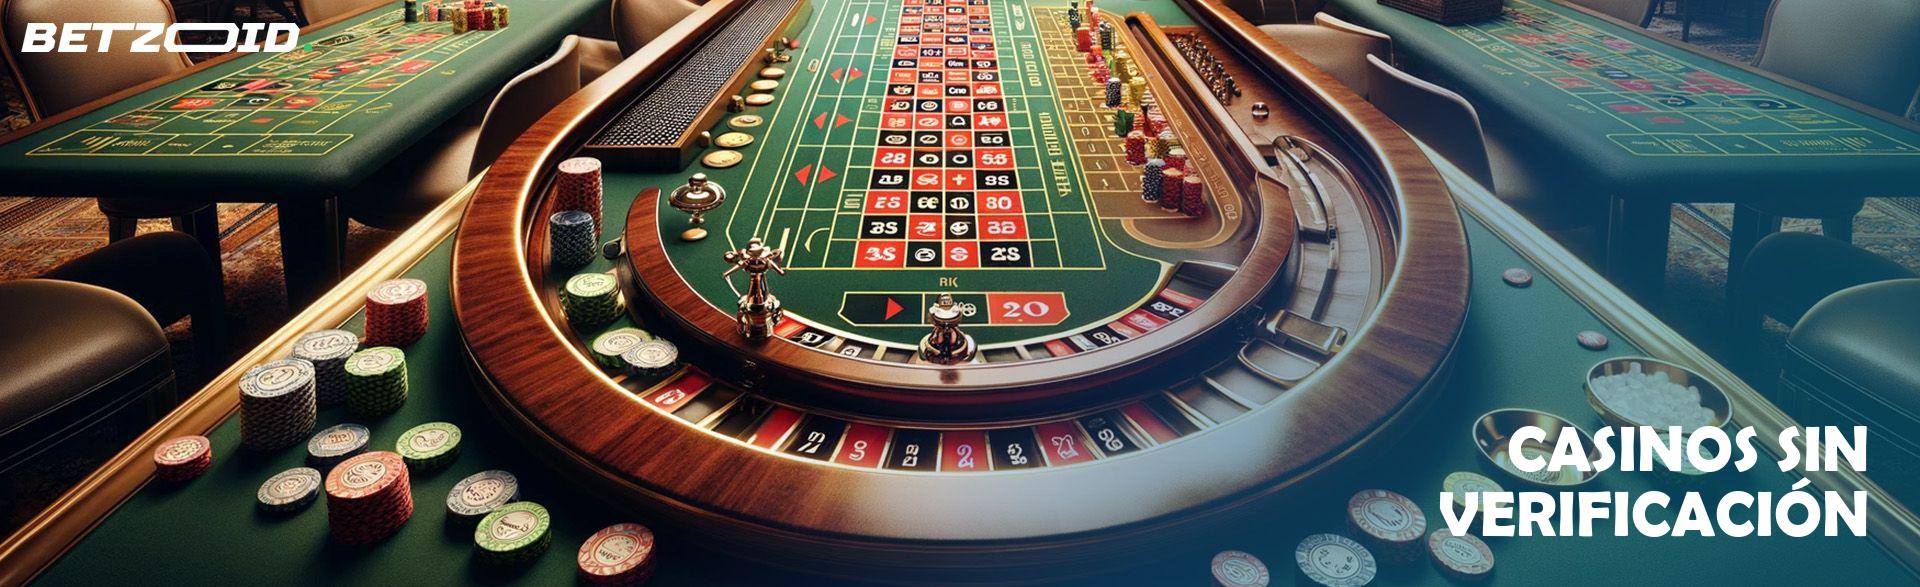 Casinos Sin Verificación.